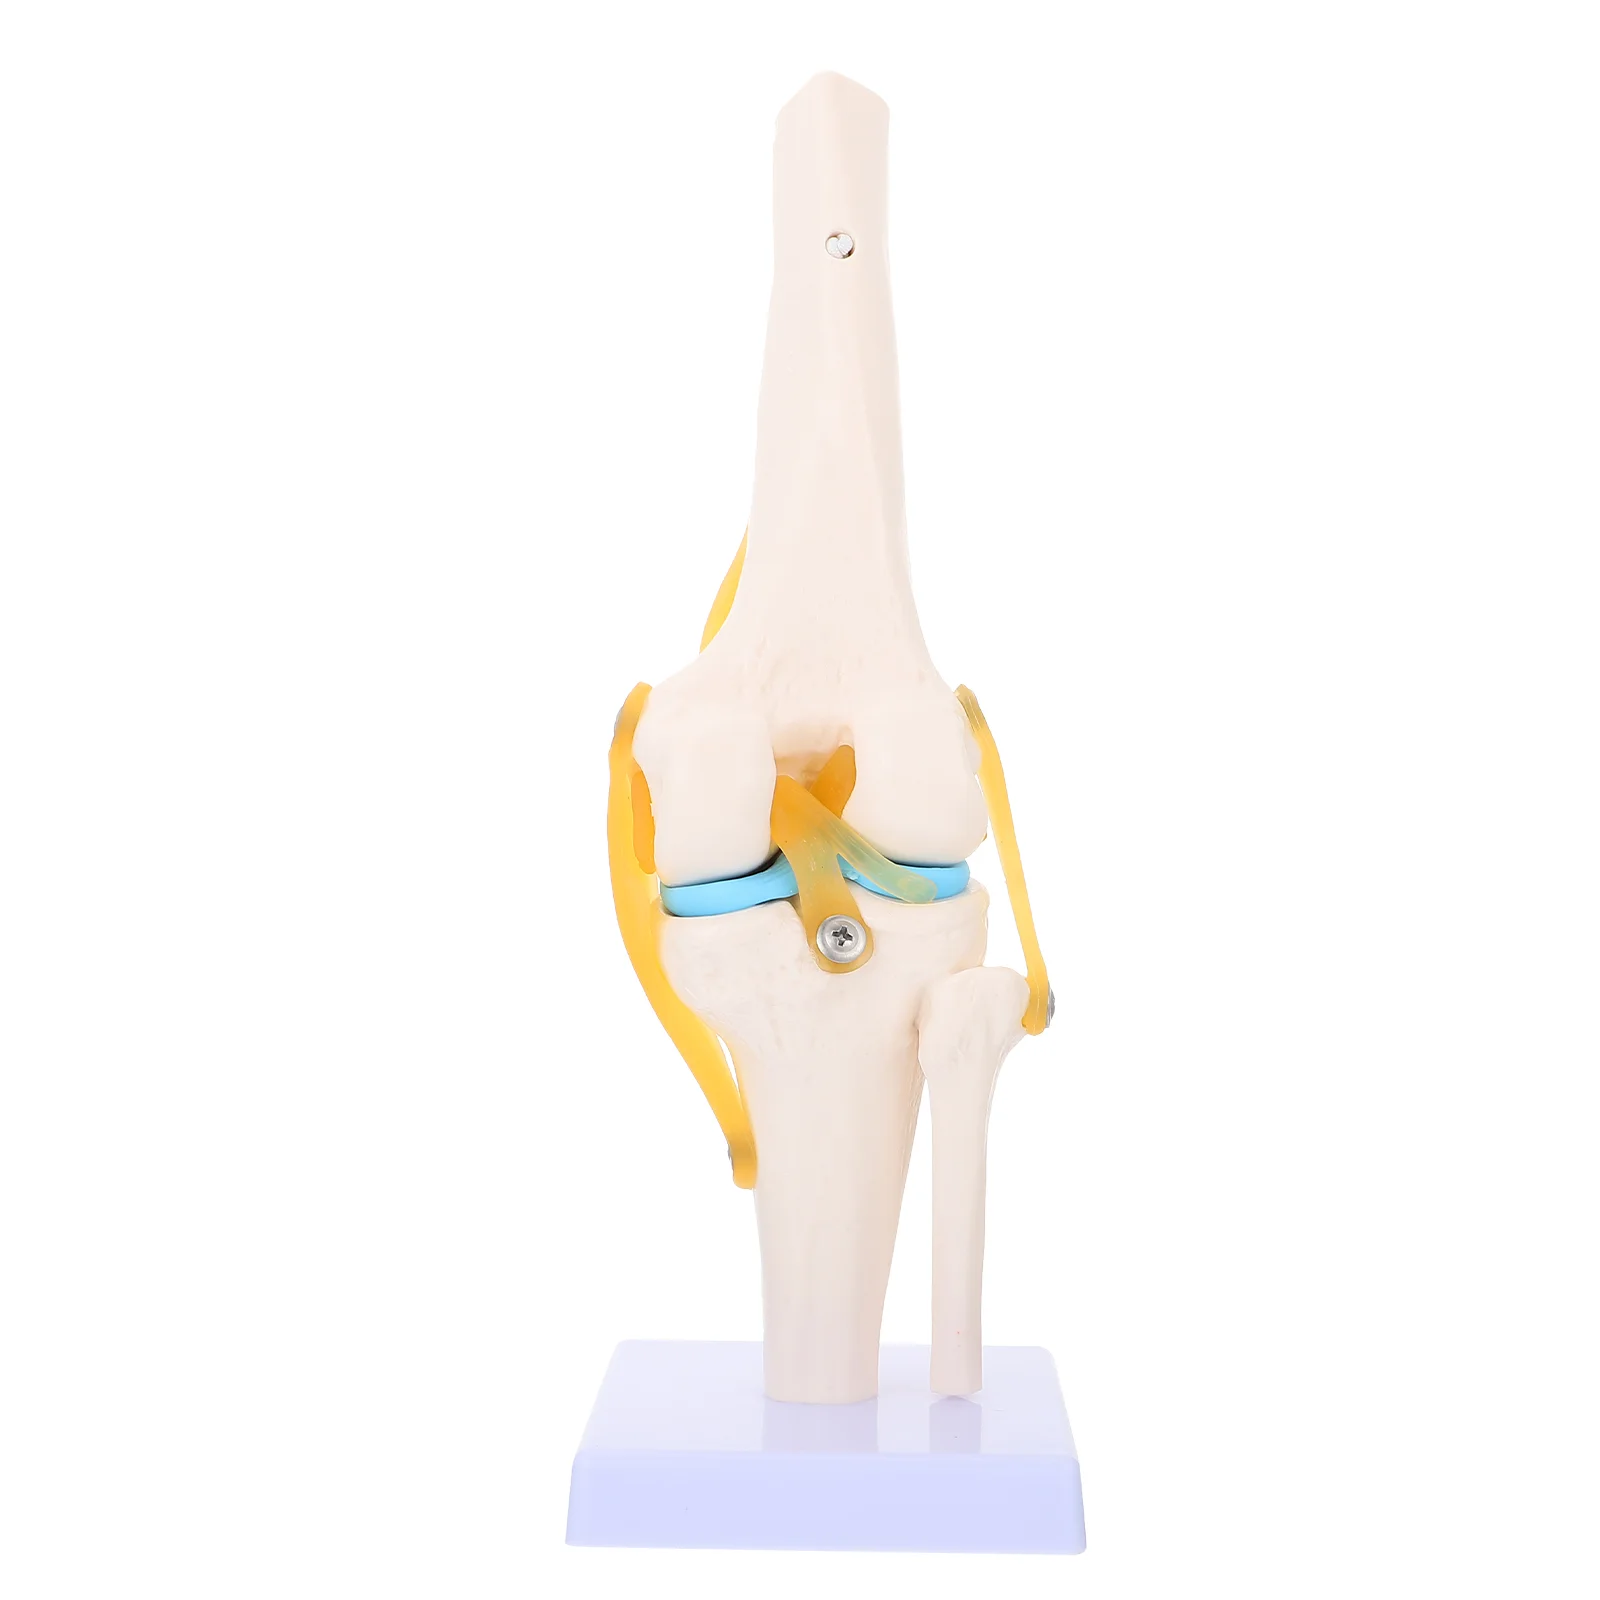 

Модель человеческого коленного сустава анатомическая модель 1:1 натуральный размер для учебных пособий